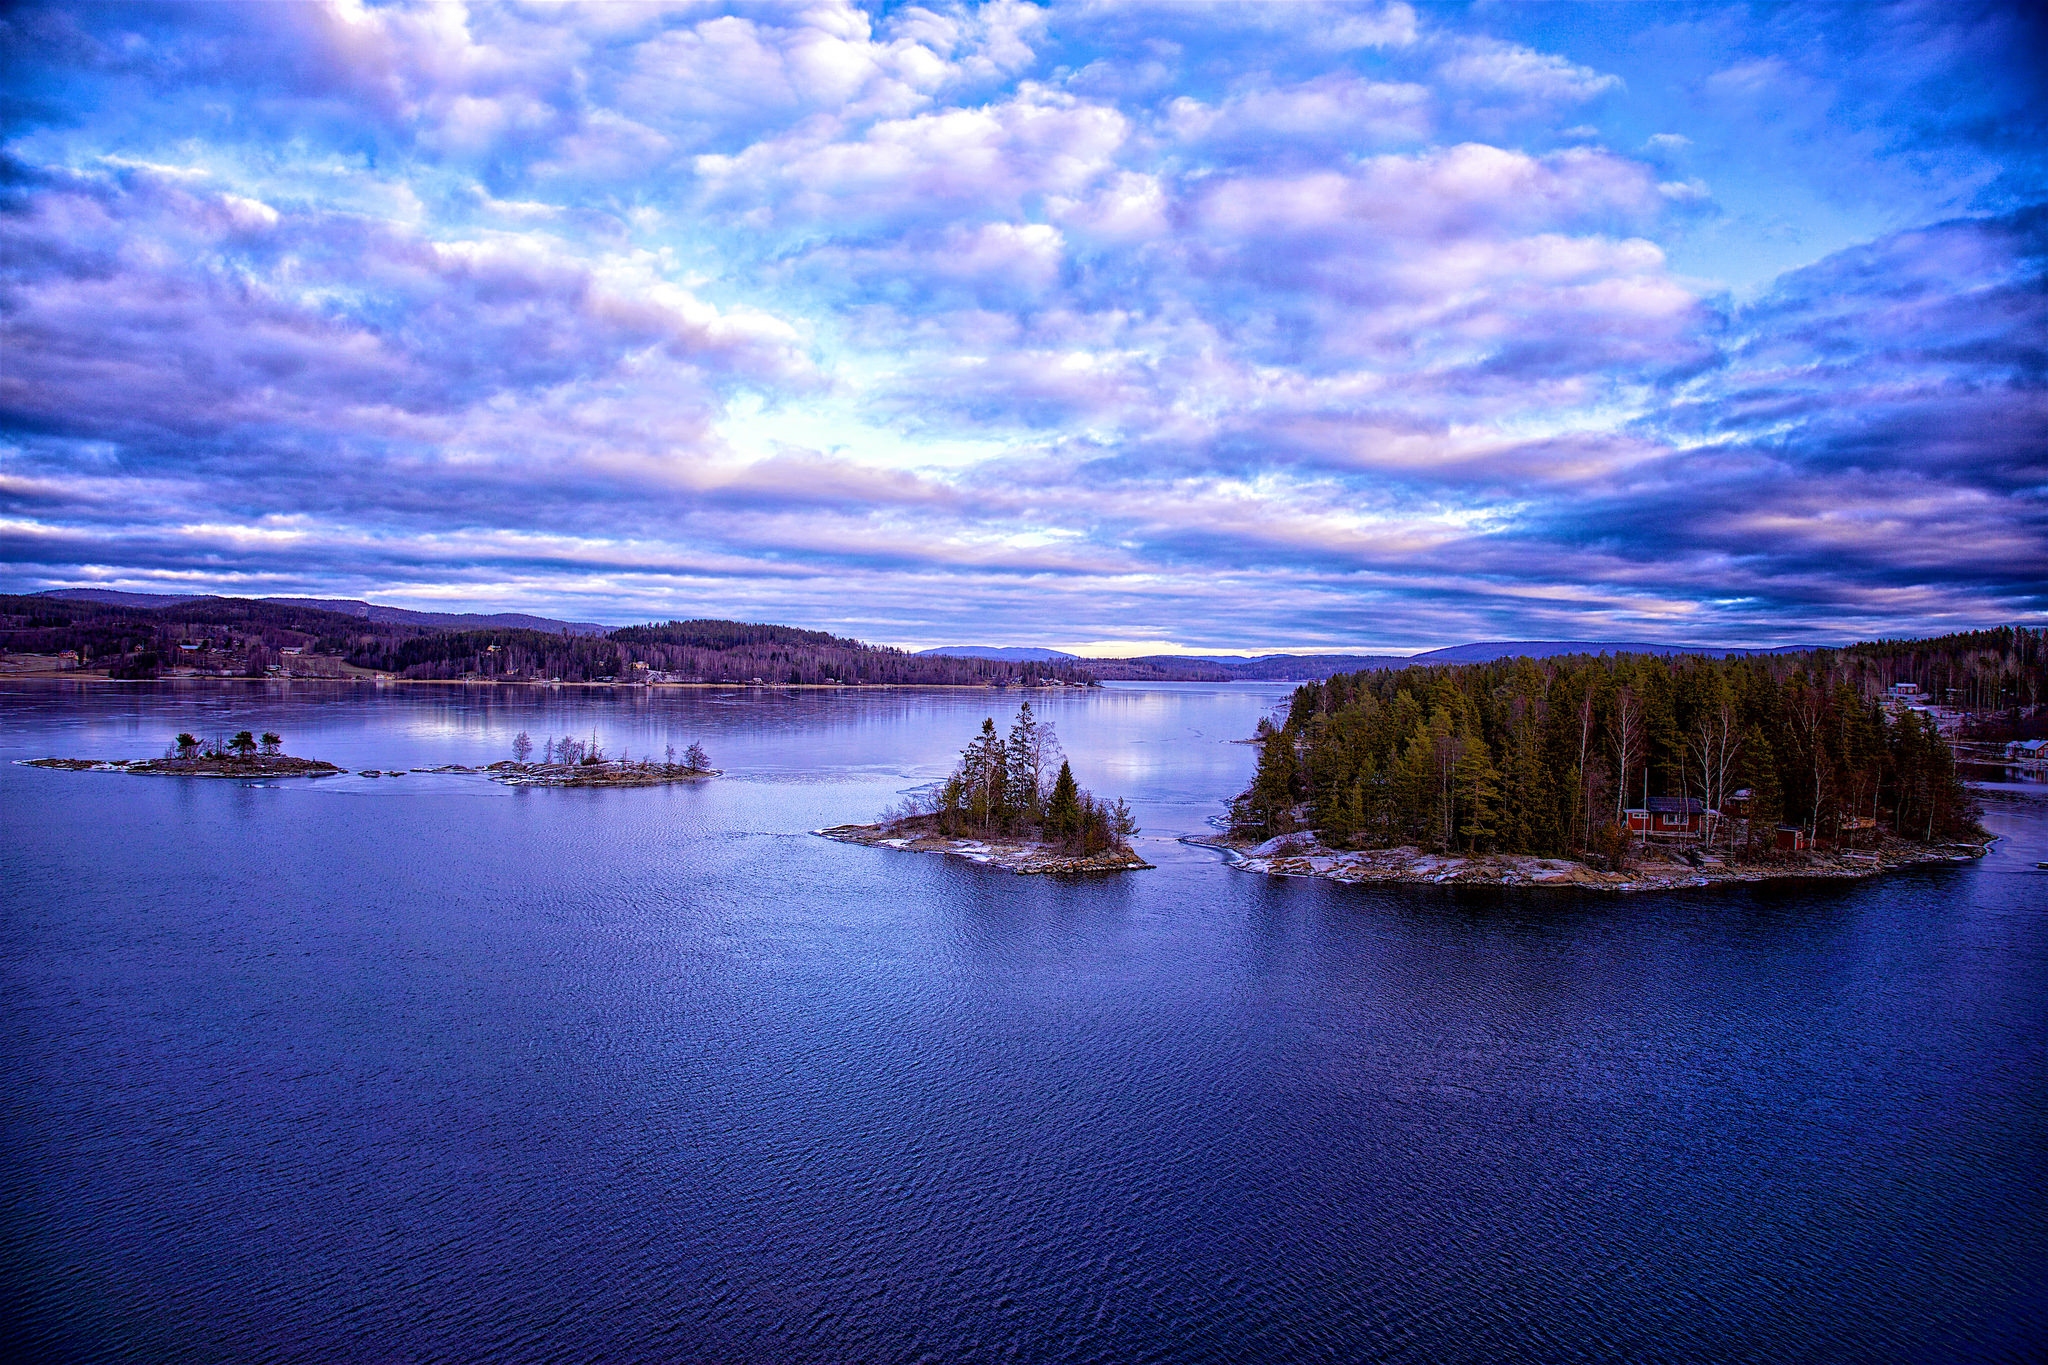 High coast. Озеро Венерн Швеция. Швеция Ботнический залив. Финское побережье Ботнического залива. Озеро Венерн Швеция замок.